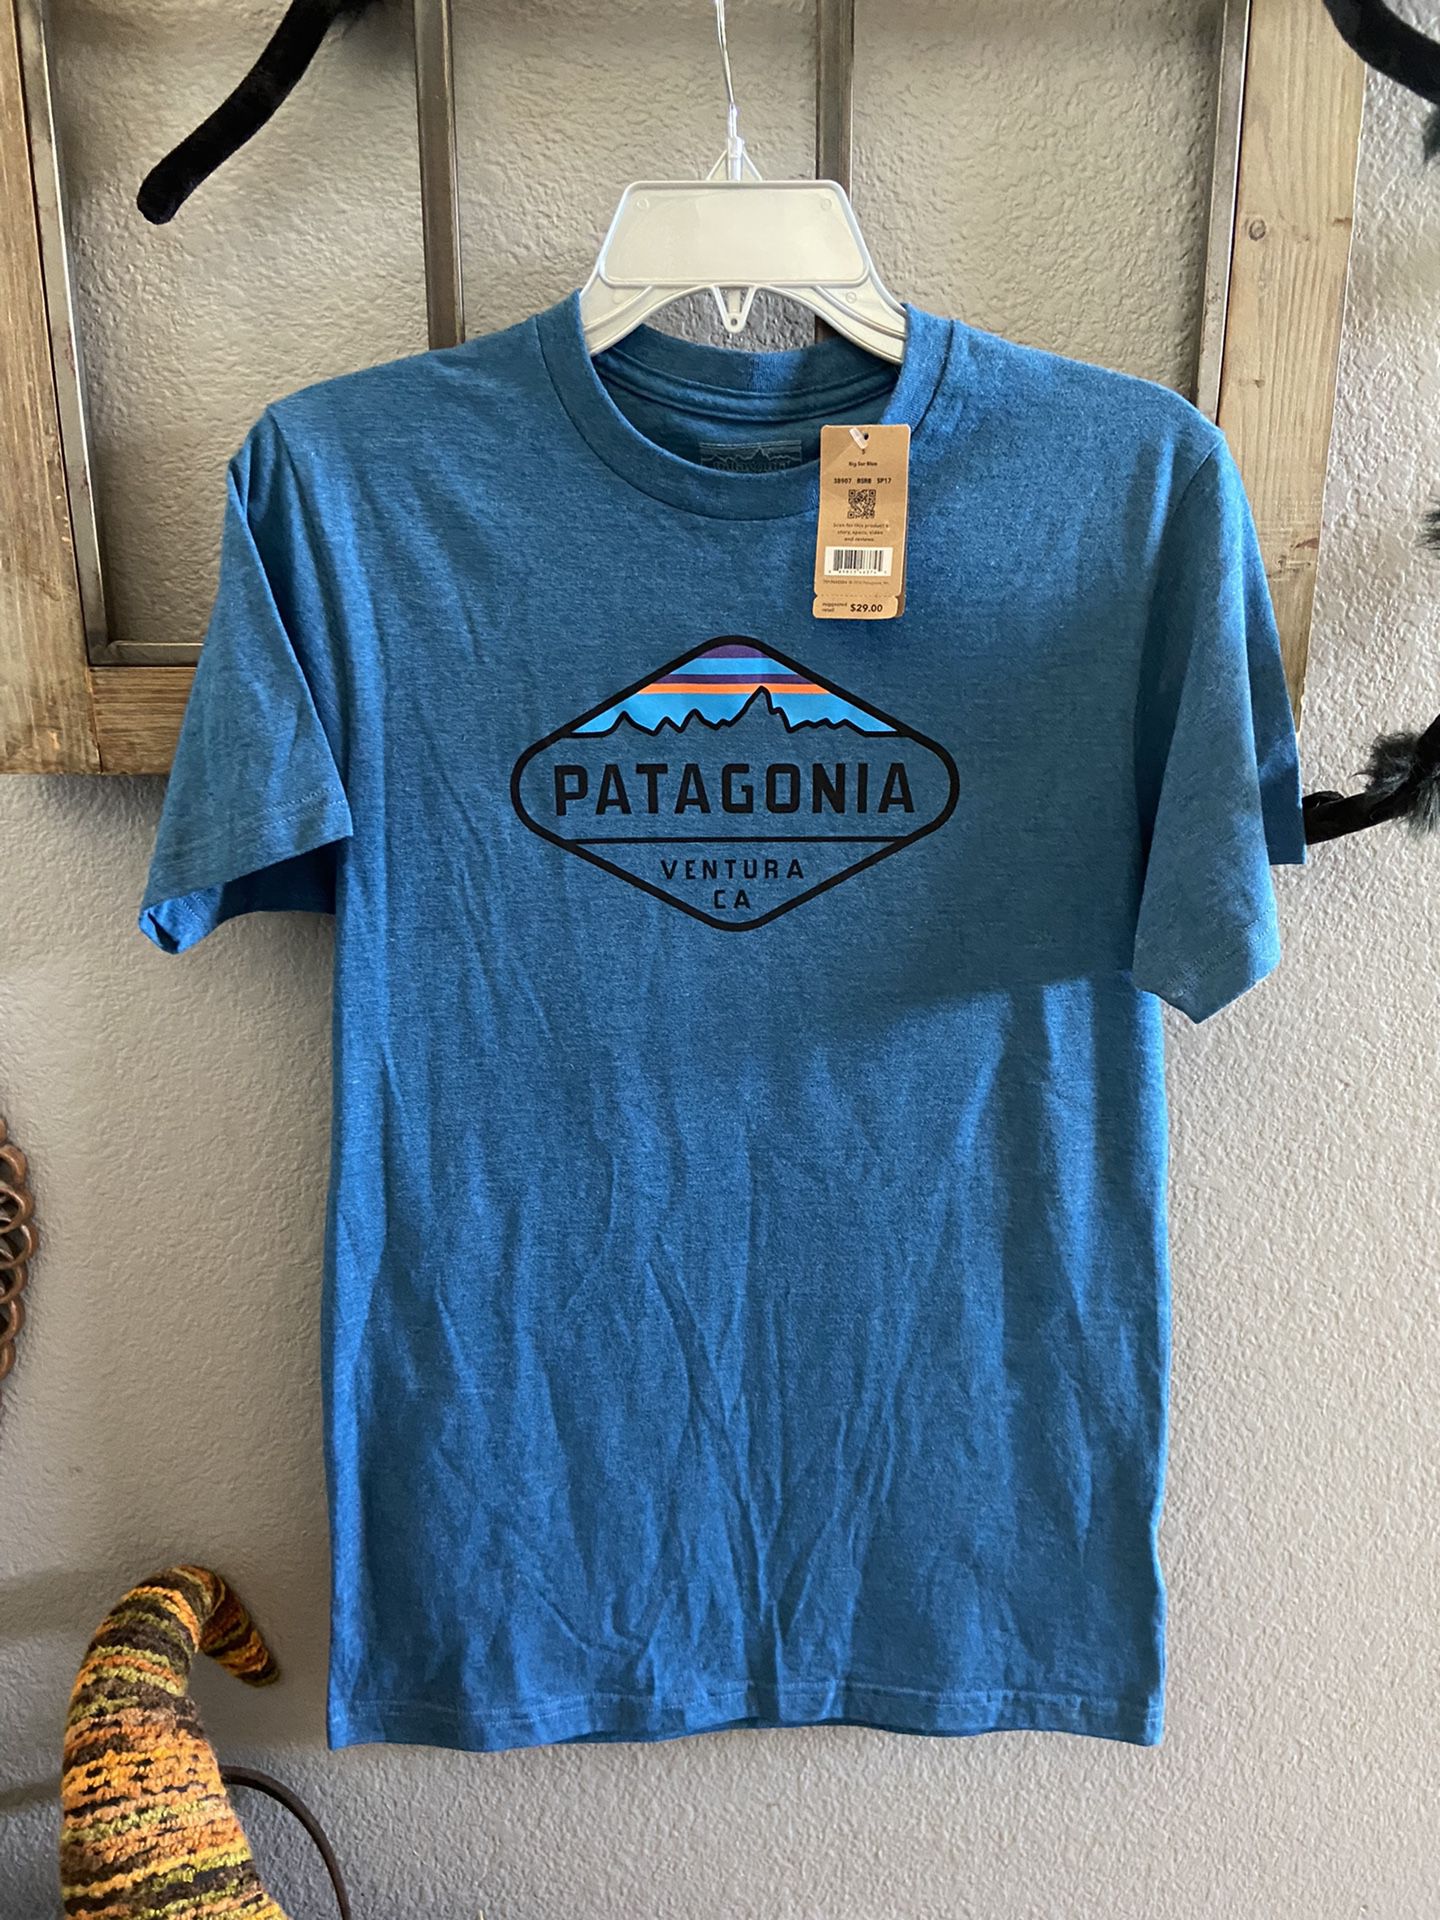 Patagonia Men’s T-shirt Slim Fit Sz Small 